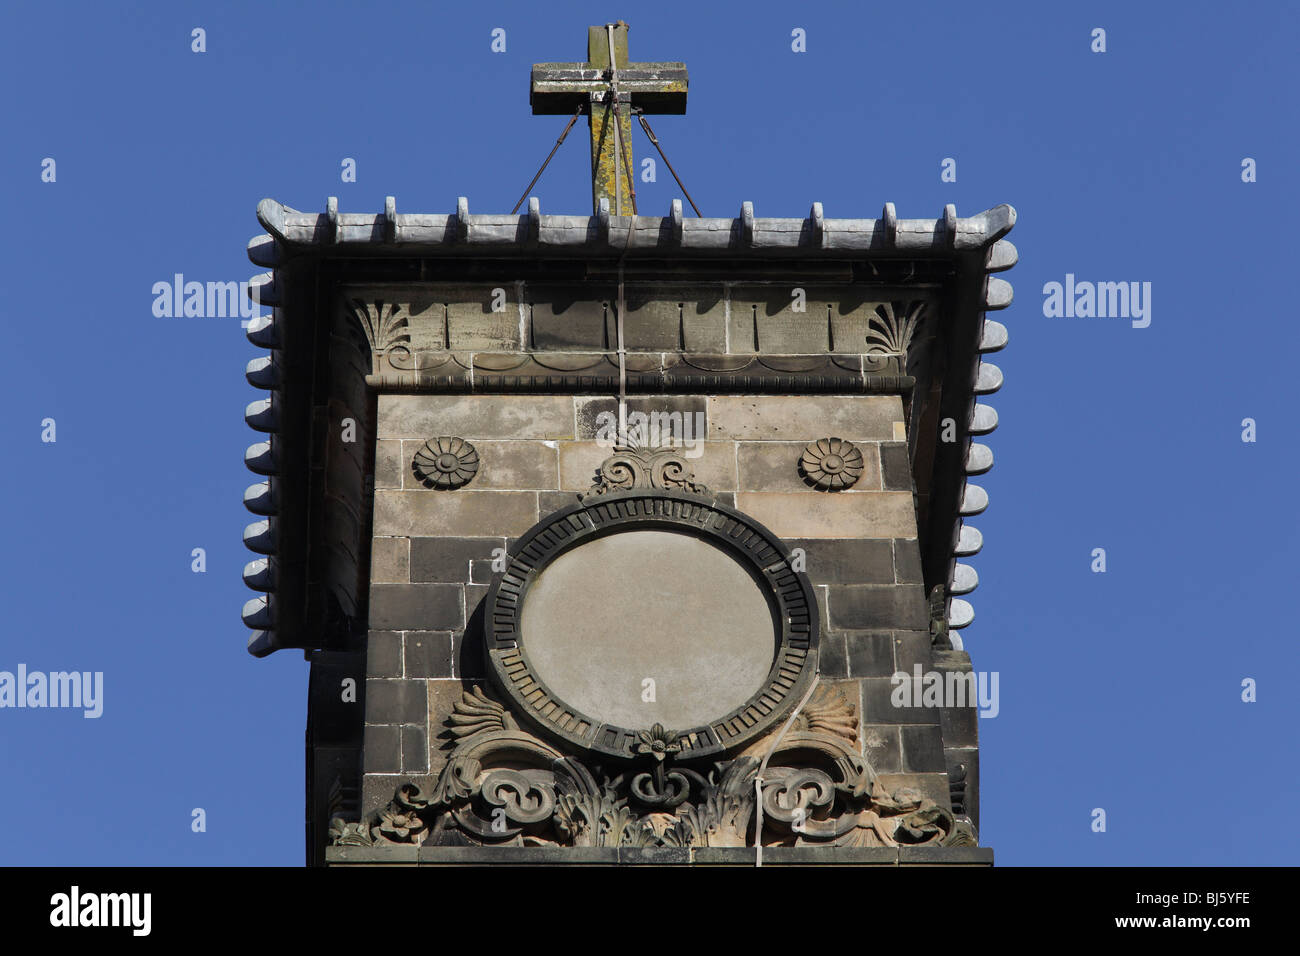 Dettagli architettonici della chiesa di Caledonia Road progettata dall'architetto Alexander 'Greek' Thomson, Glasgow, Scozia, Regno Unito Foto Stock